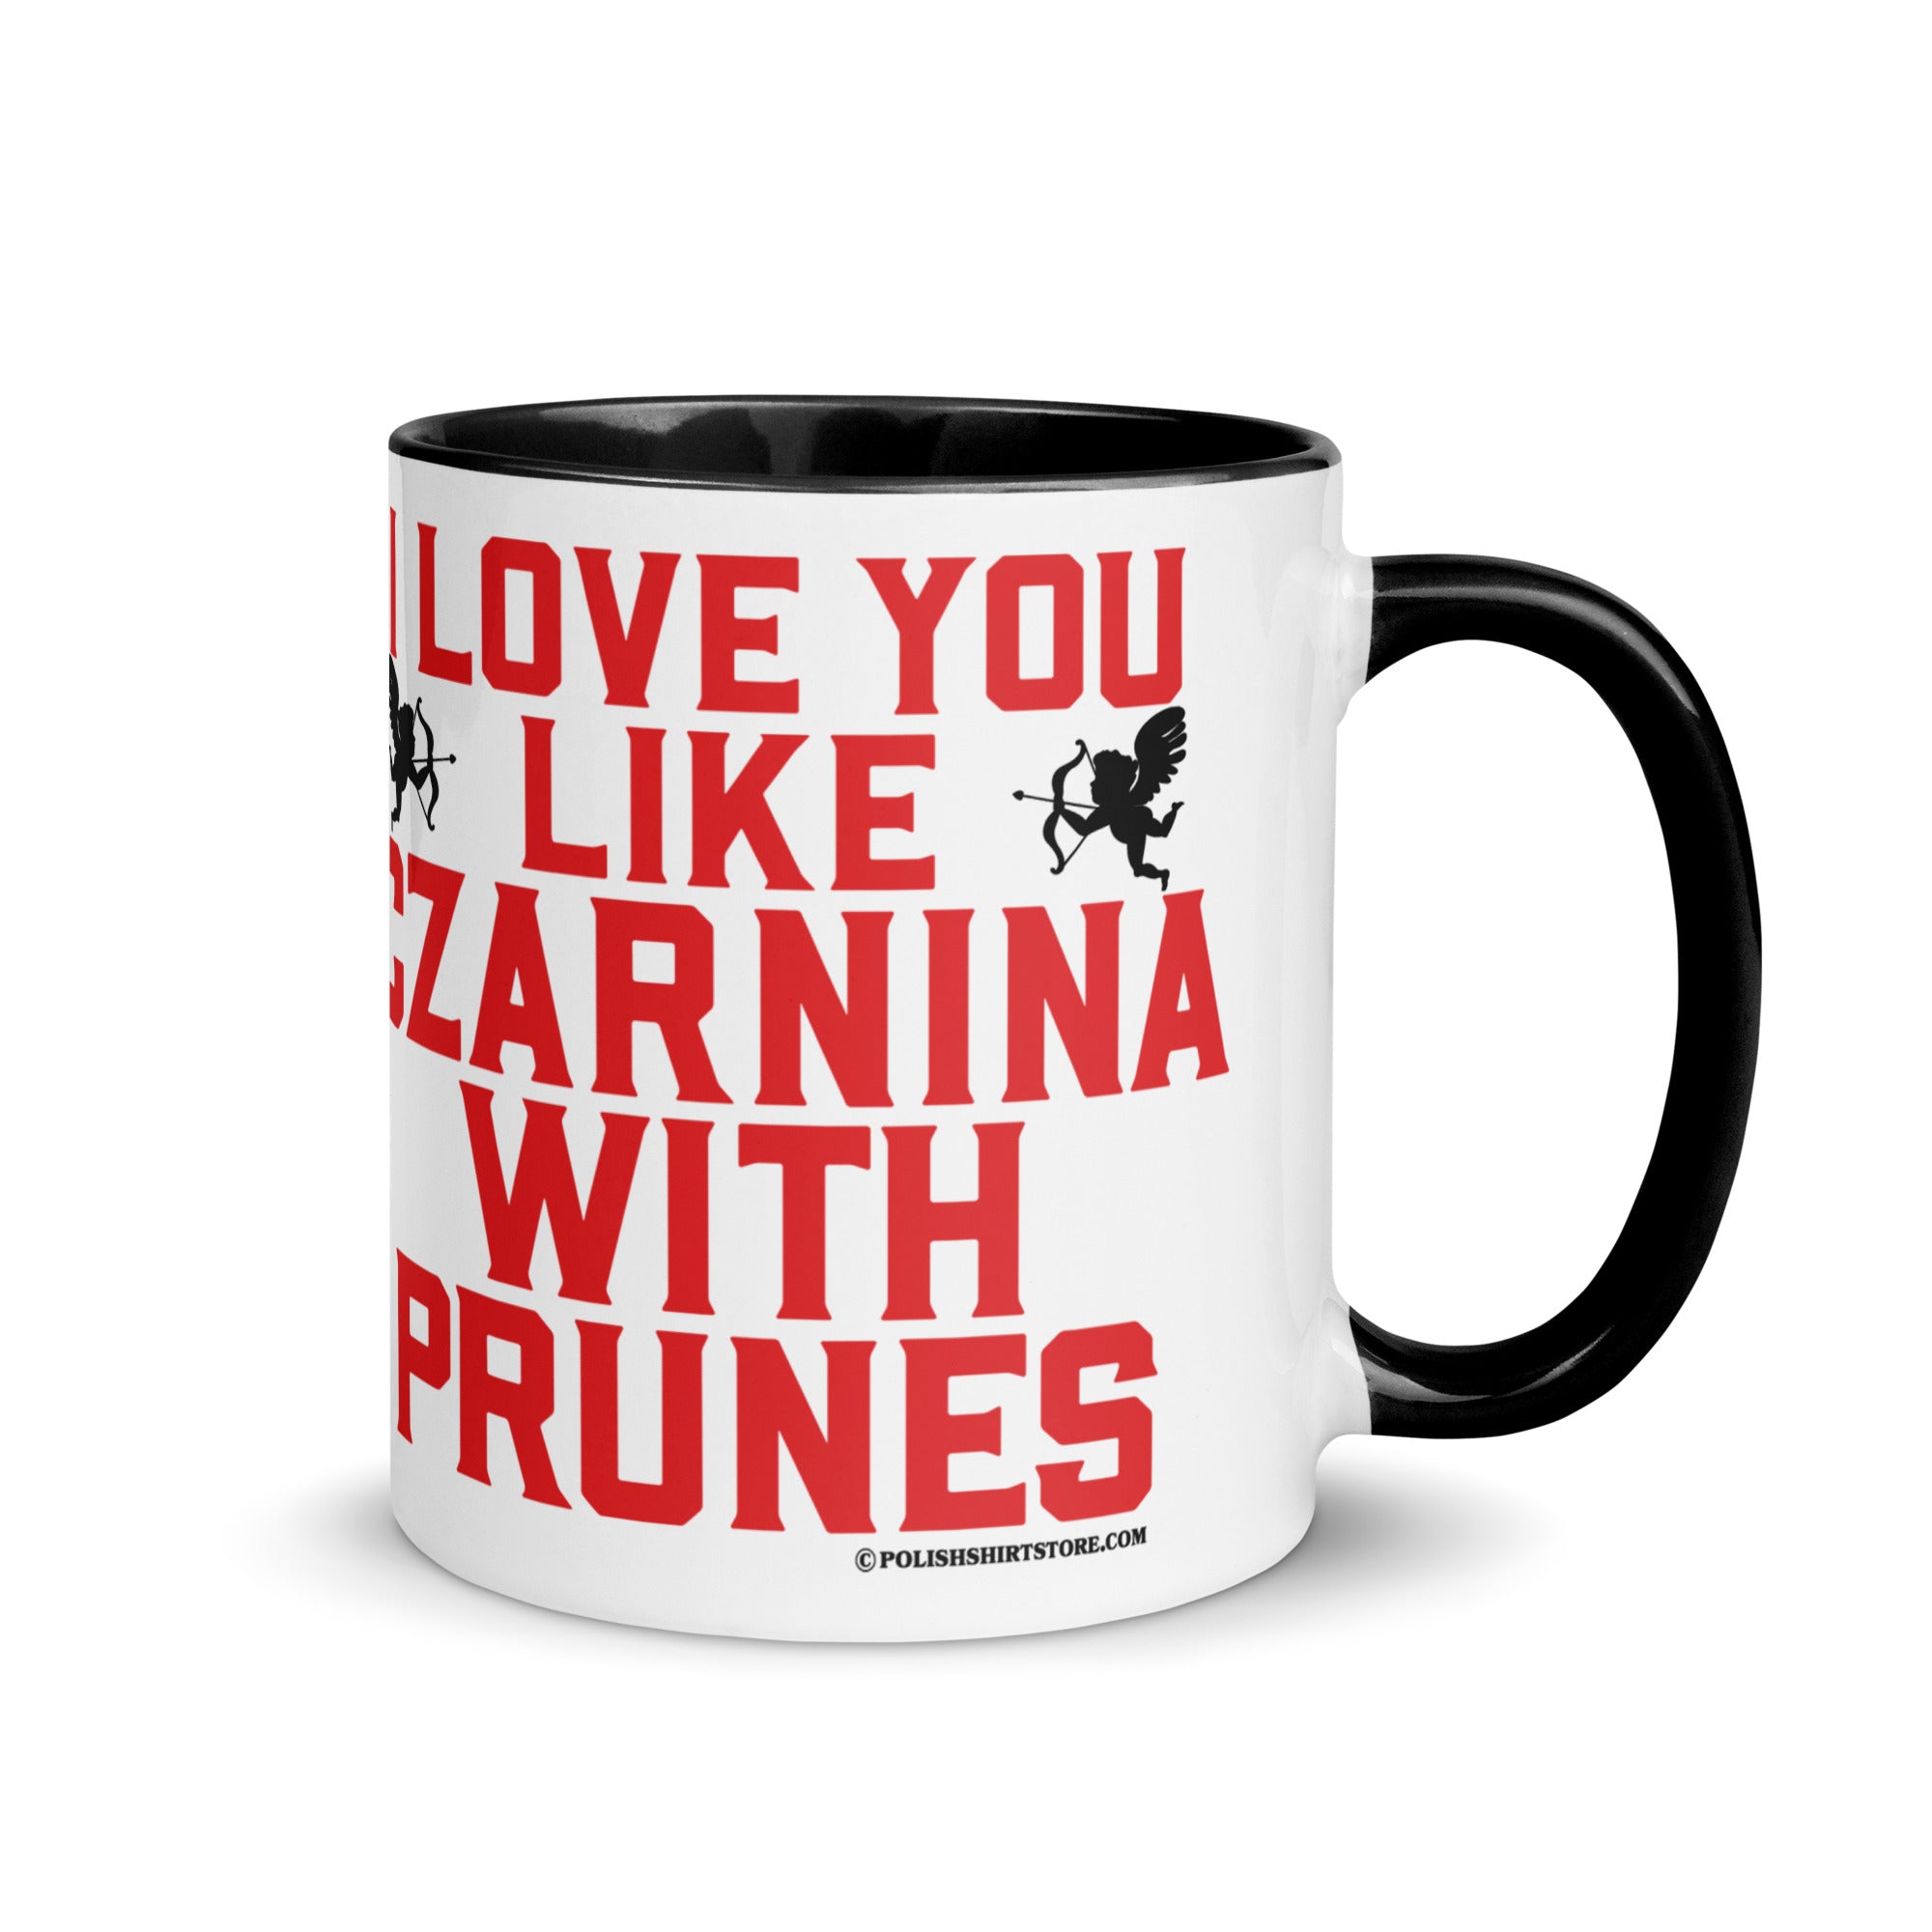 I Love You Like Czarnina With Prunes Coffee Mug with Color Inside  Polish Shirt Store Black 11 oz 